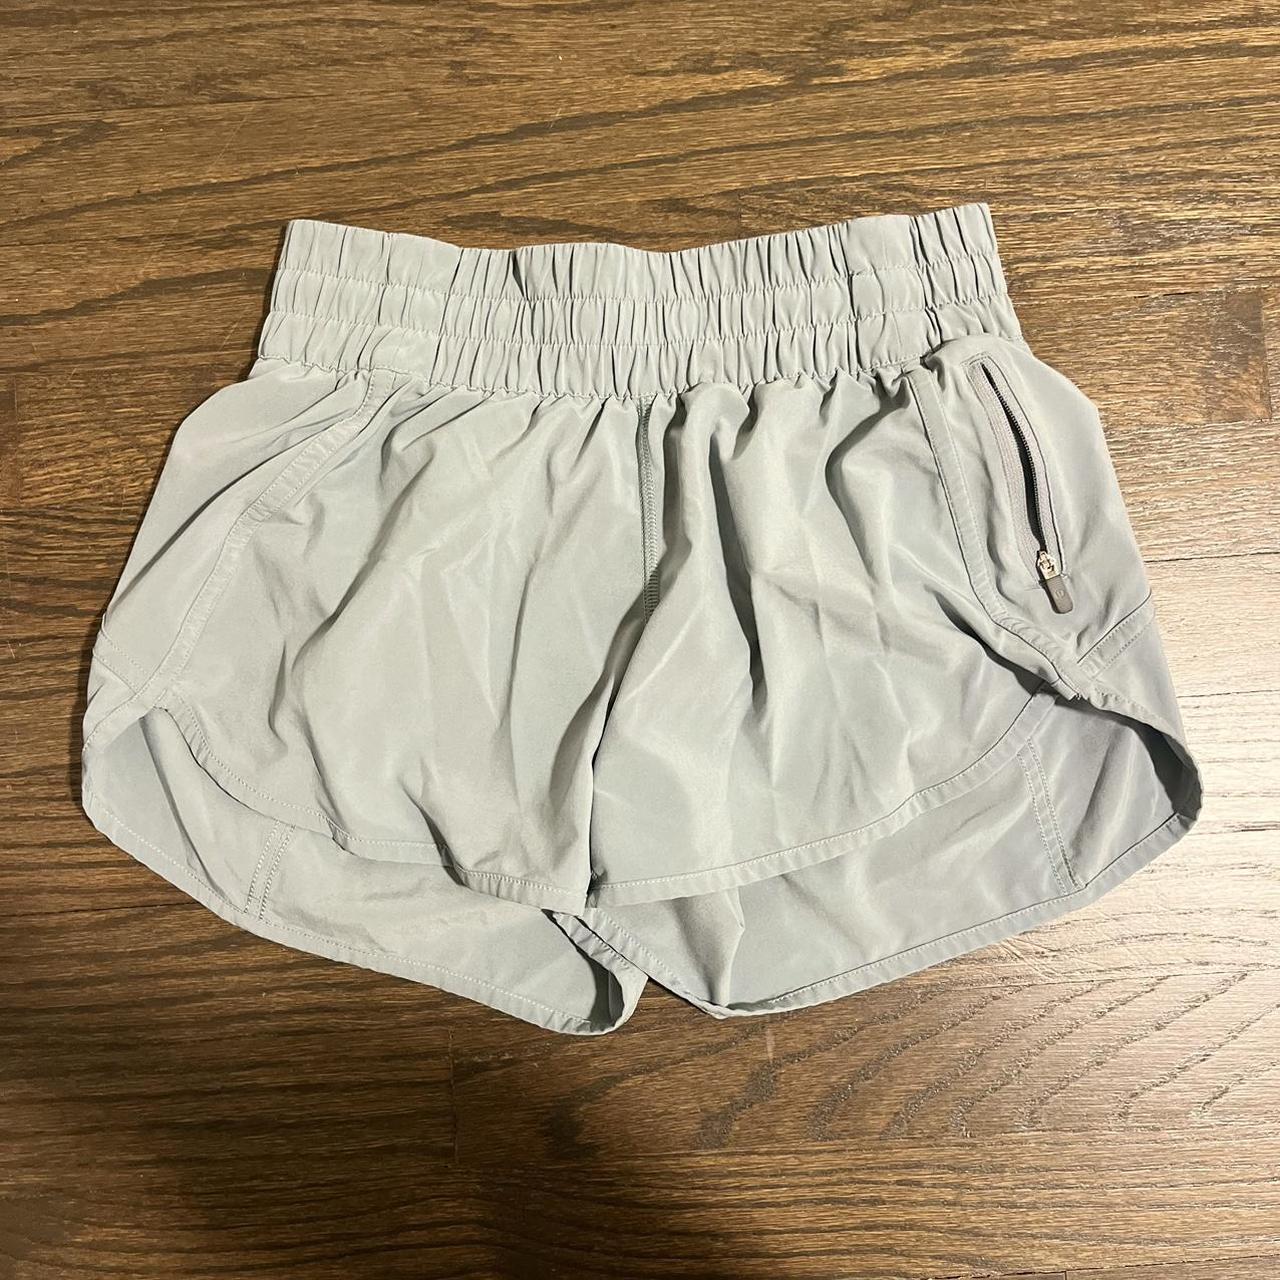 lululemon athletica shorts — size 4 - dusty blue - Depop